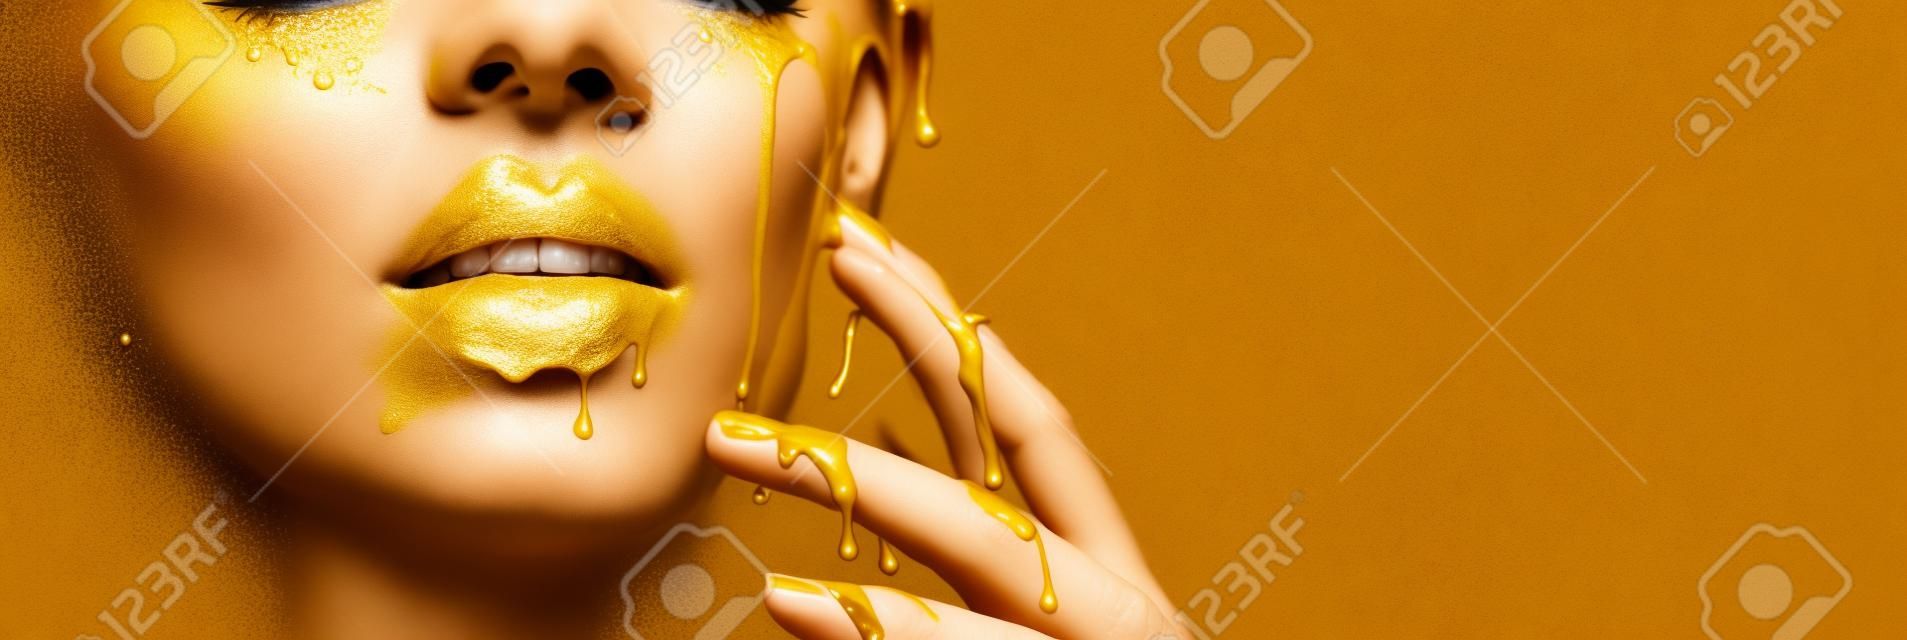 金色の塗料は、顔の唇と手から滴り落ちる、金色の液体は美しいモデルの女の子の口、創造的な抽象的なメイクに滴る。美容女性の顔